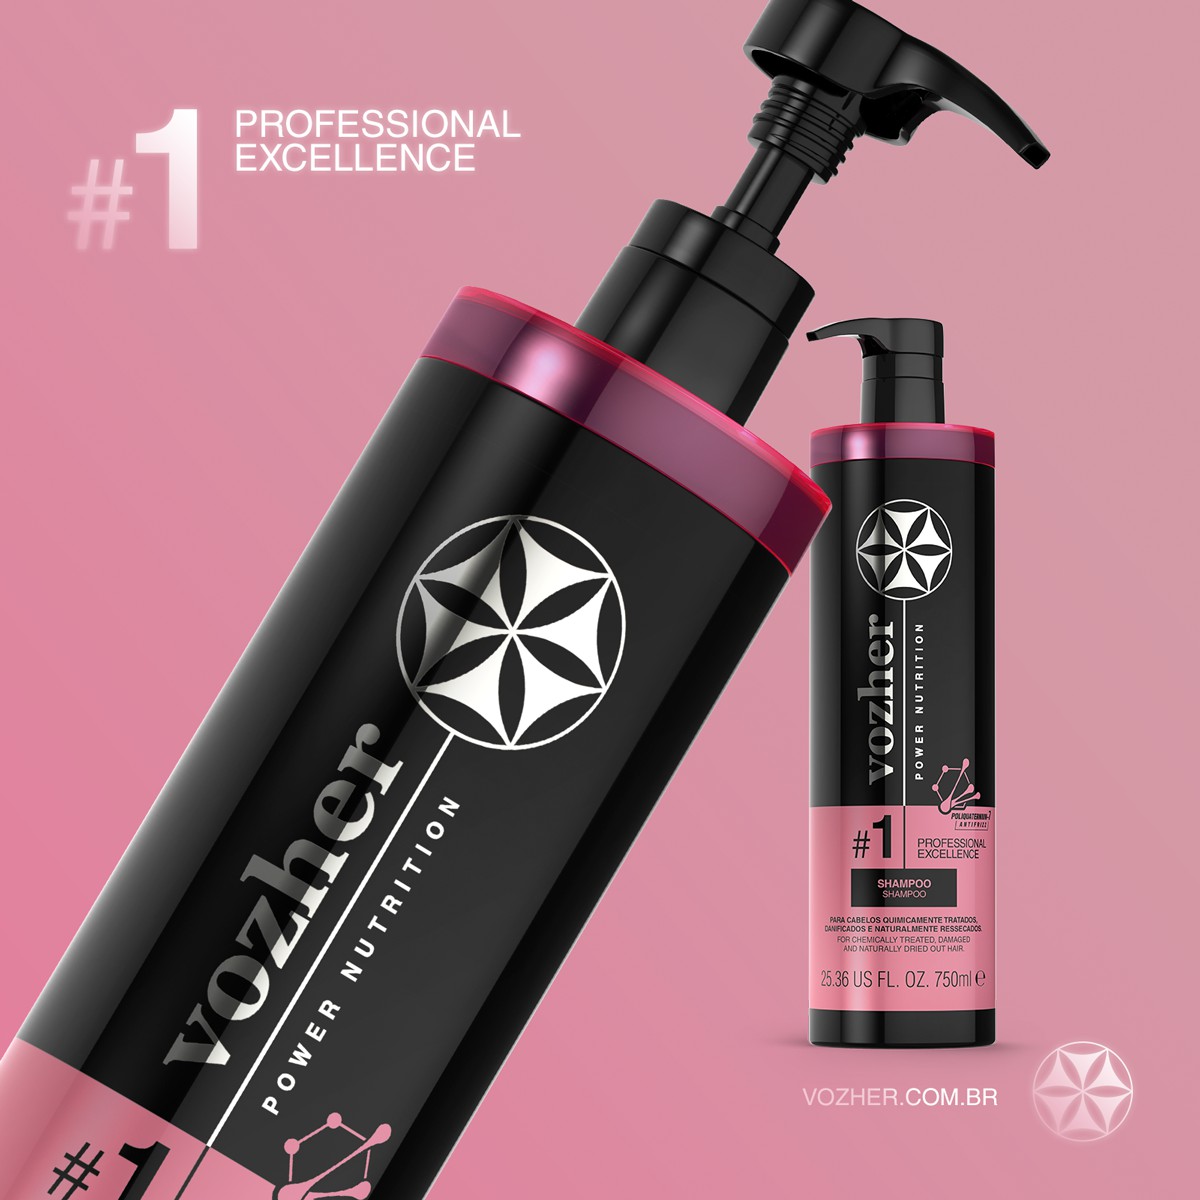 Shampoo Profissional Vozher #1 750ml - VOZHER - Beleza Profissional